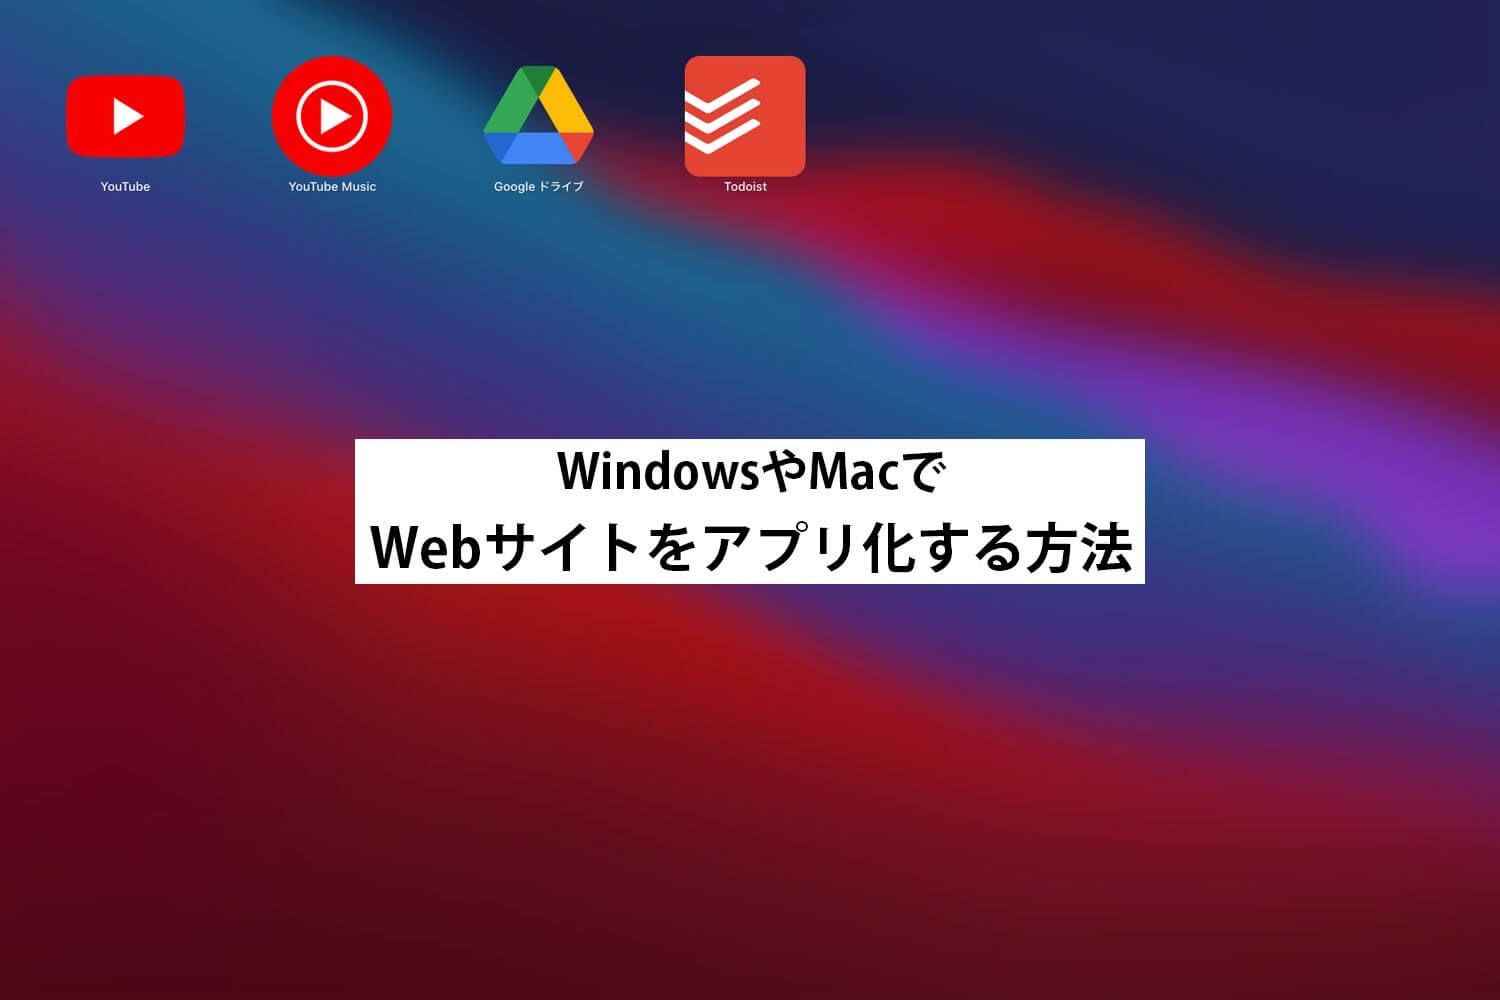 WebサイトをWindows・Macアプリ化する方法